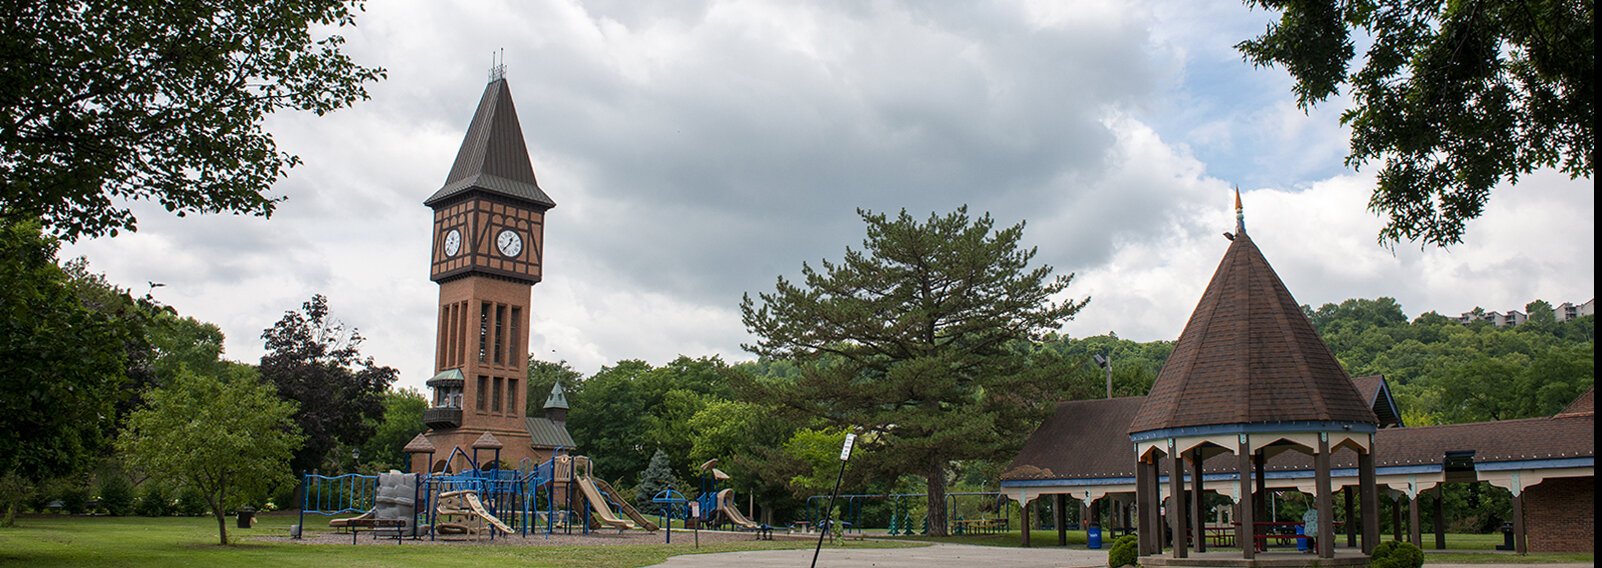 After Devou Park, Goebel Park is Covington's most visited.